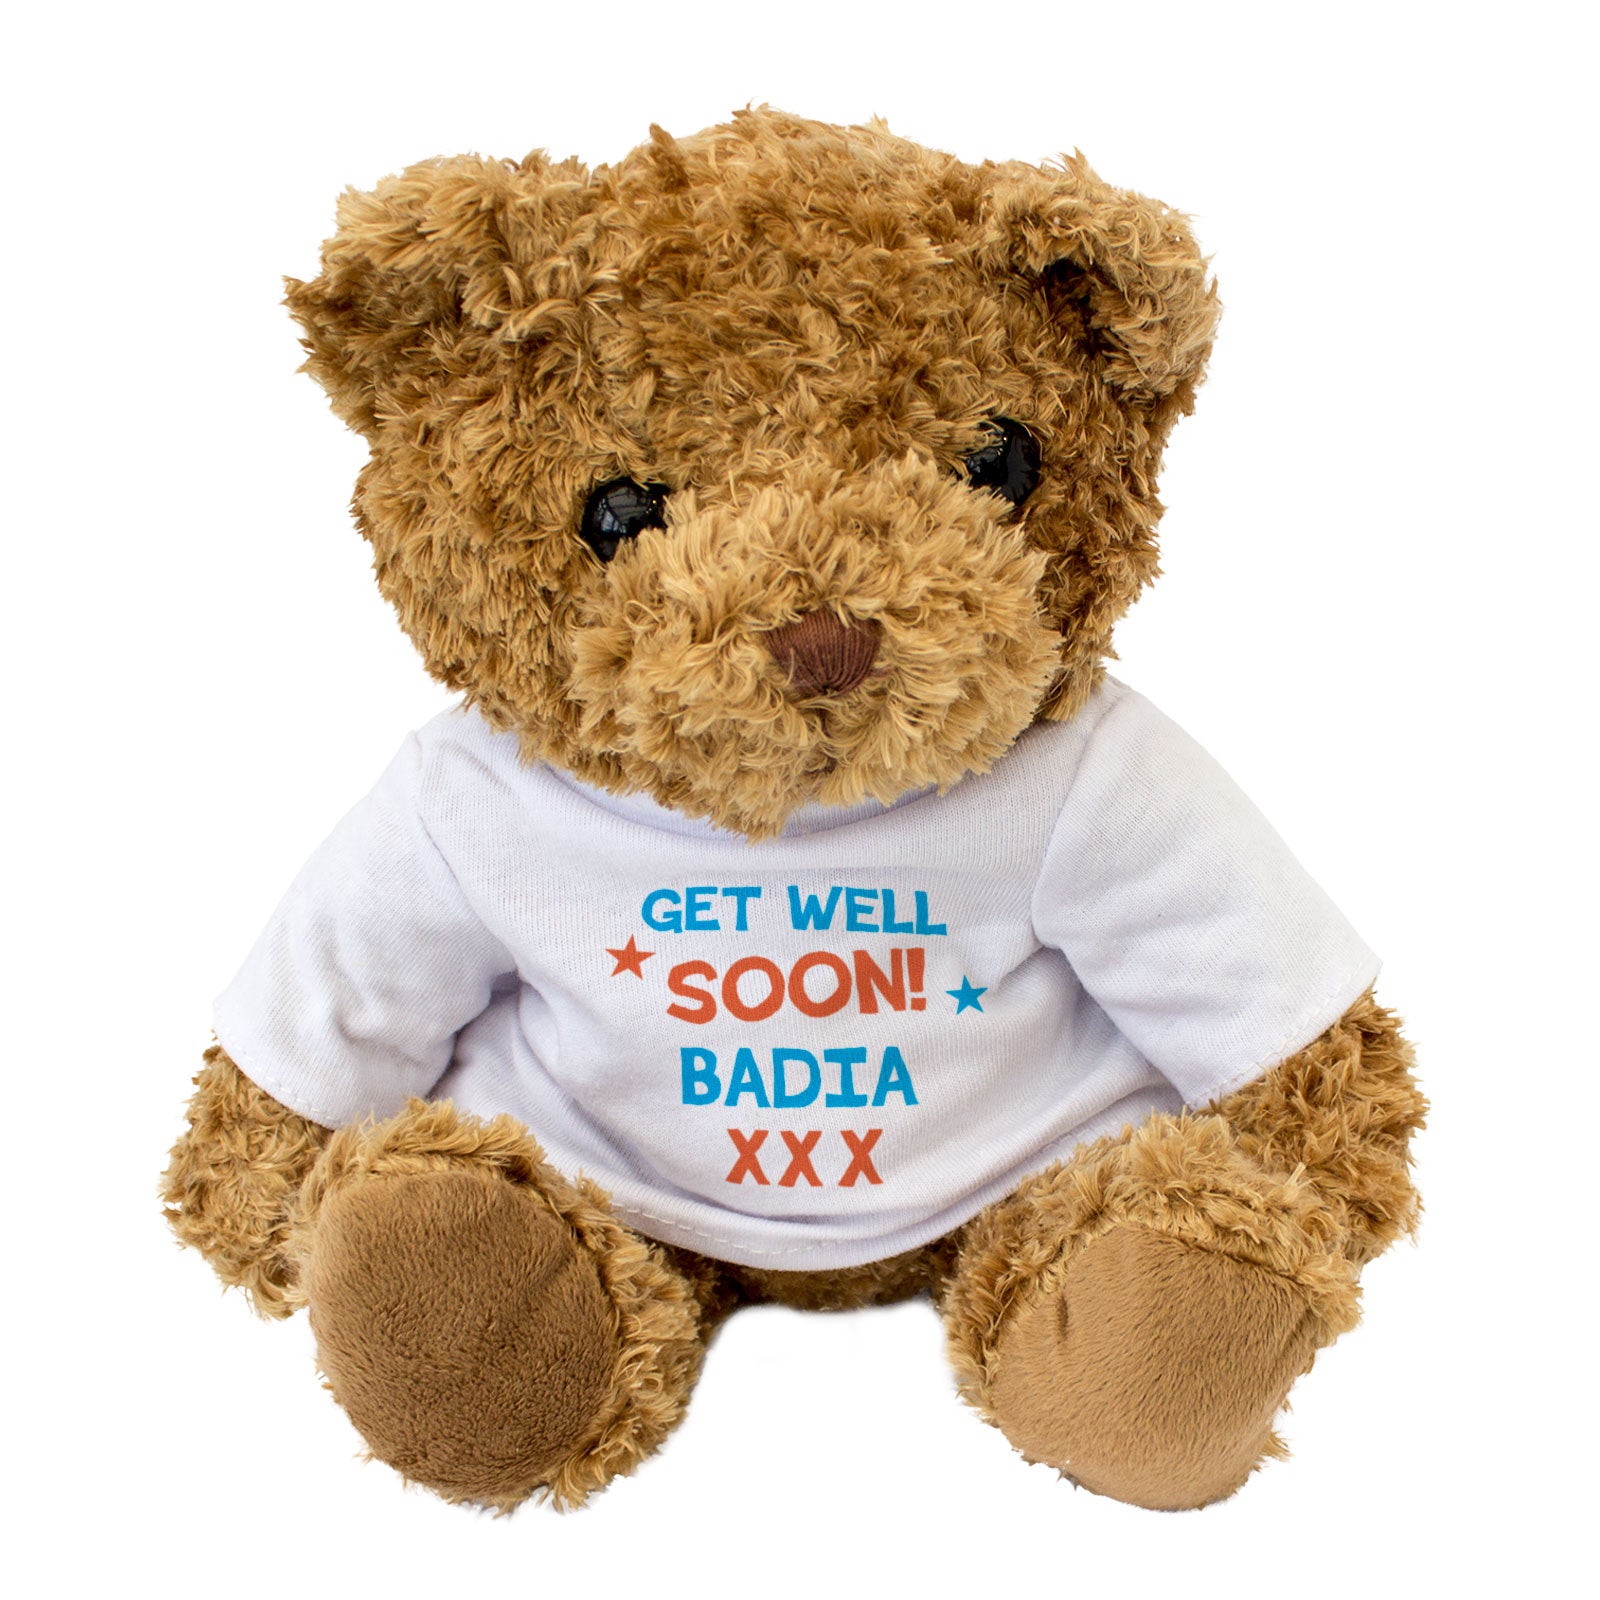 Get Well Soon Badia - Teddy Bear